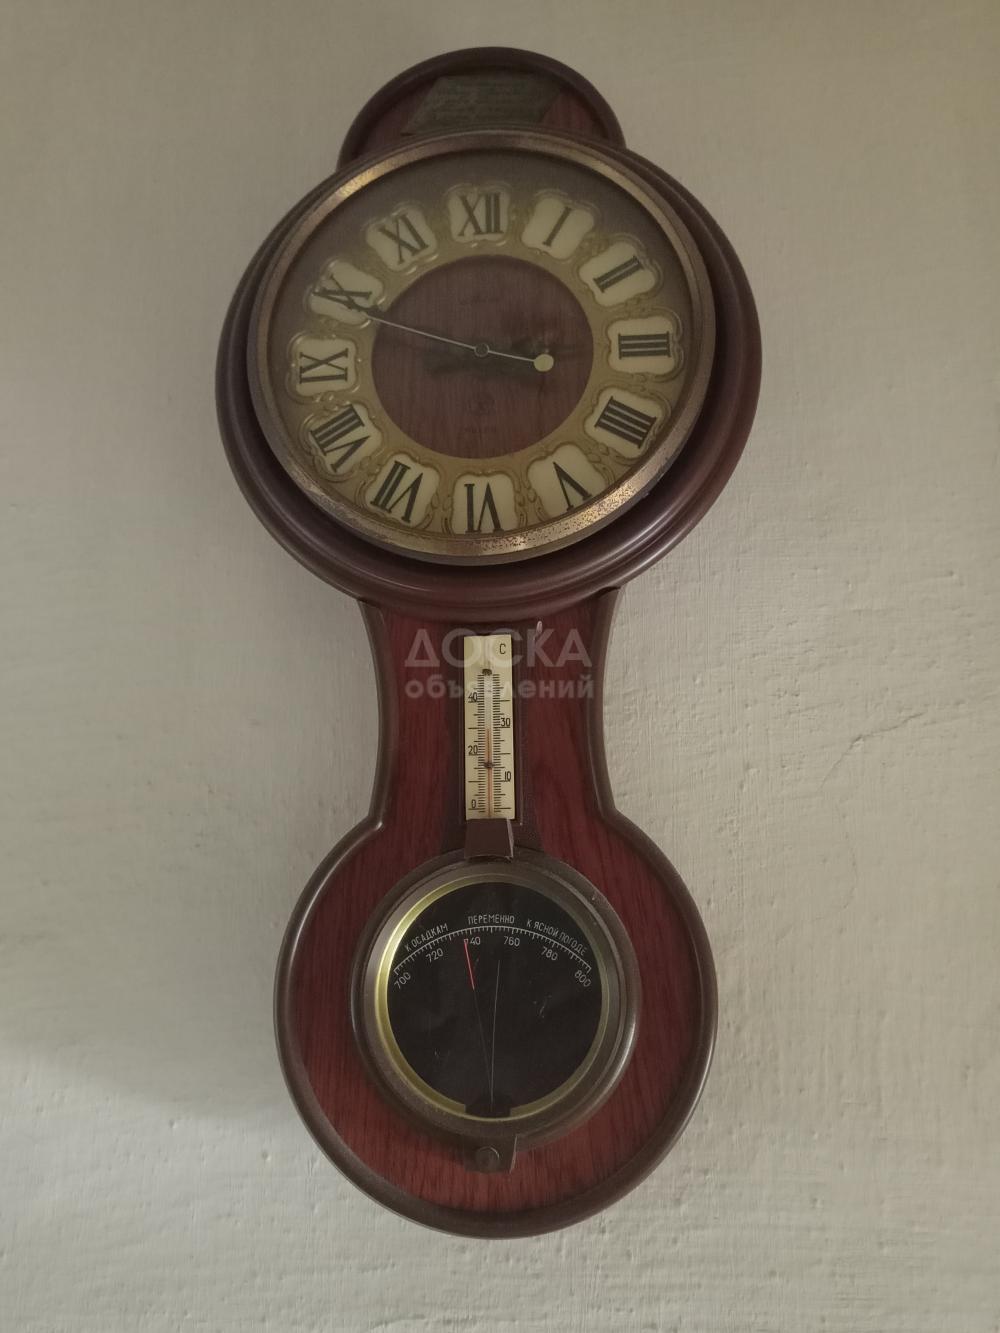 Часы настенные "Маяк" с барометром и термометром.